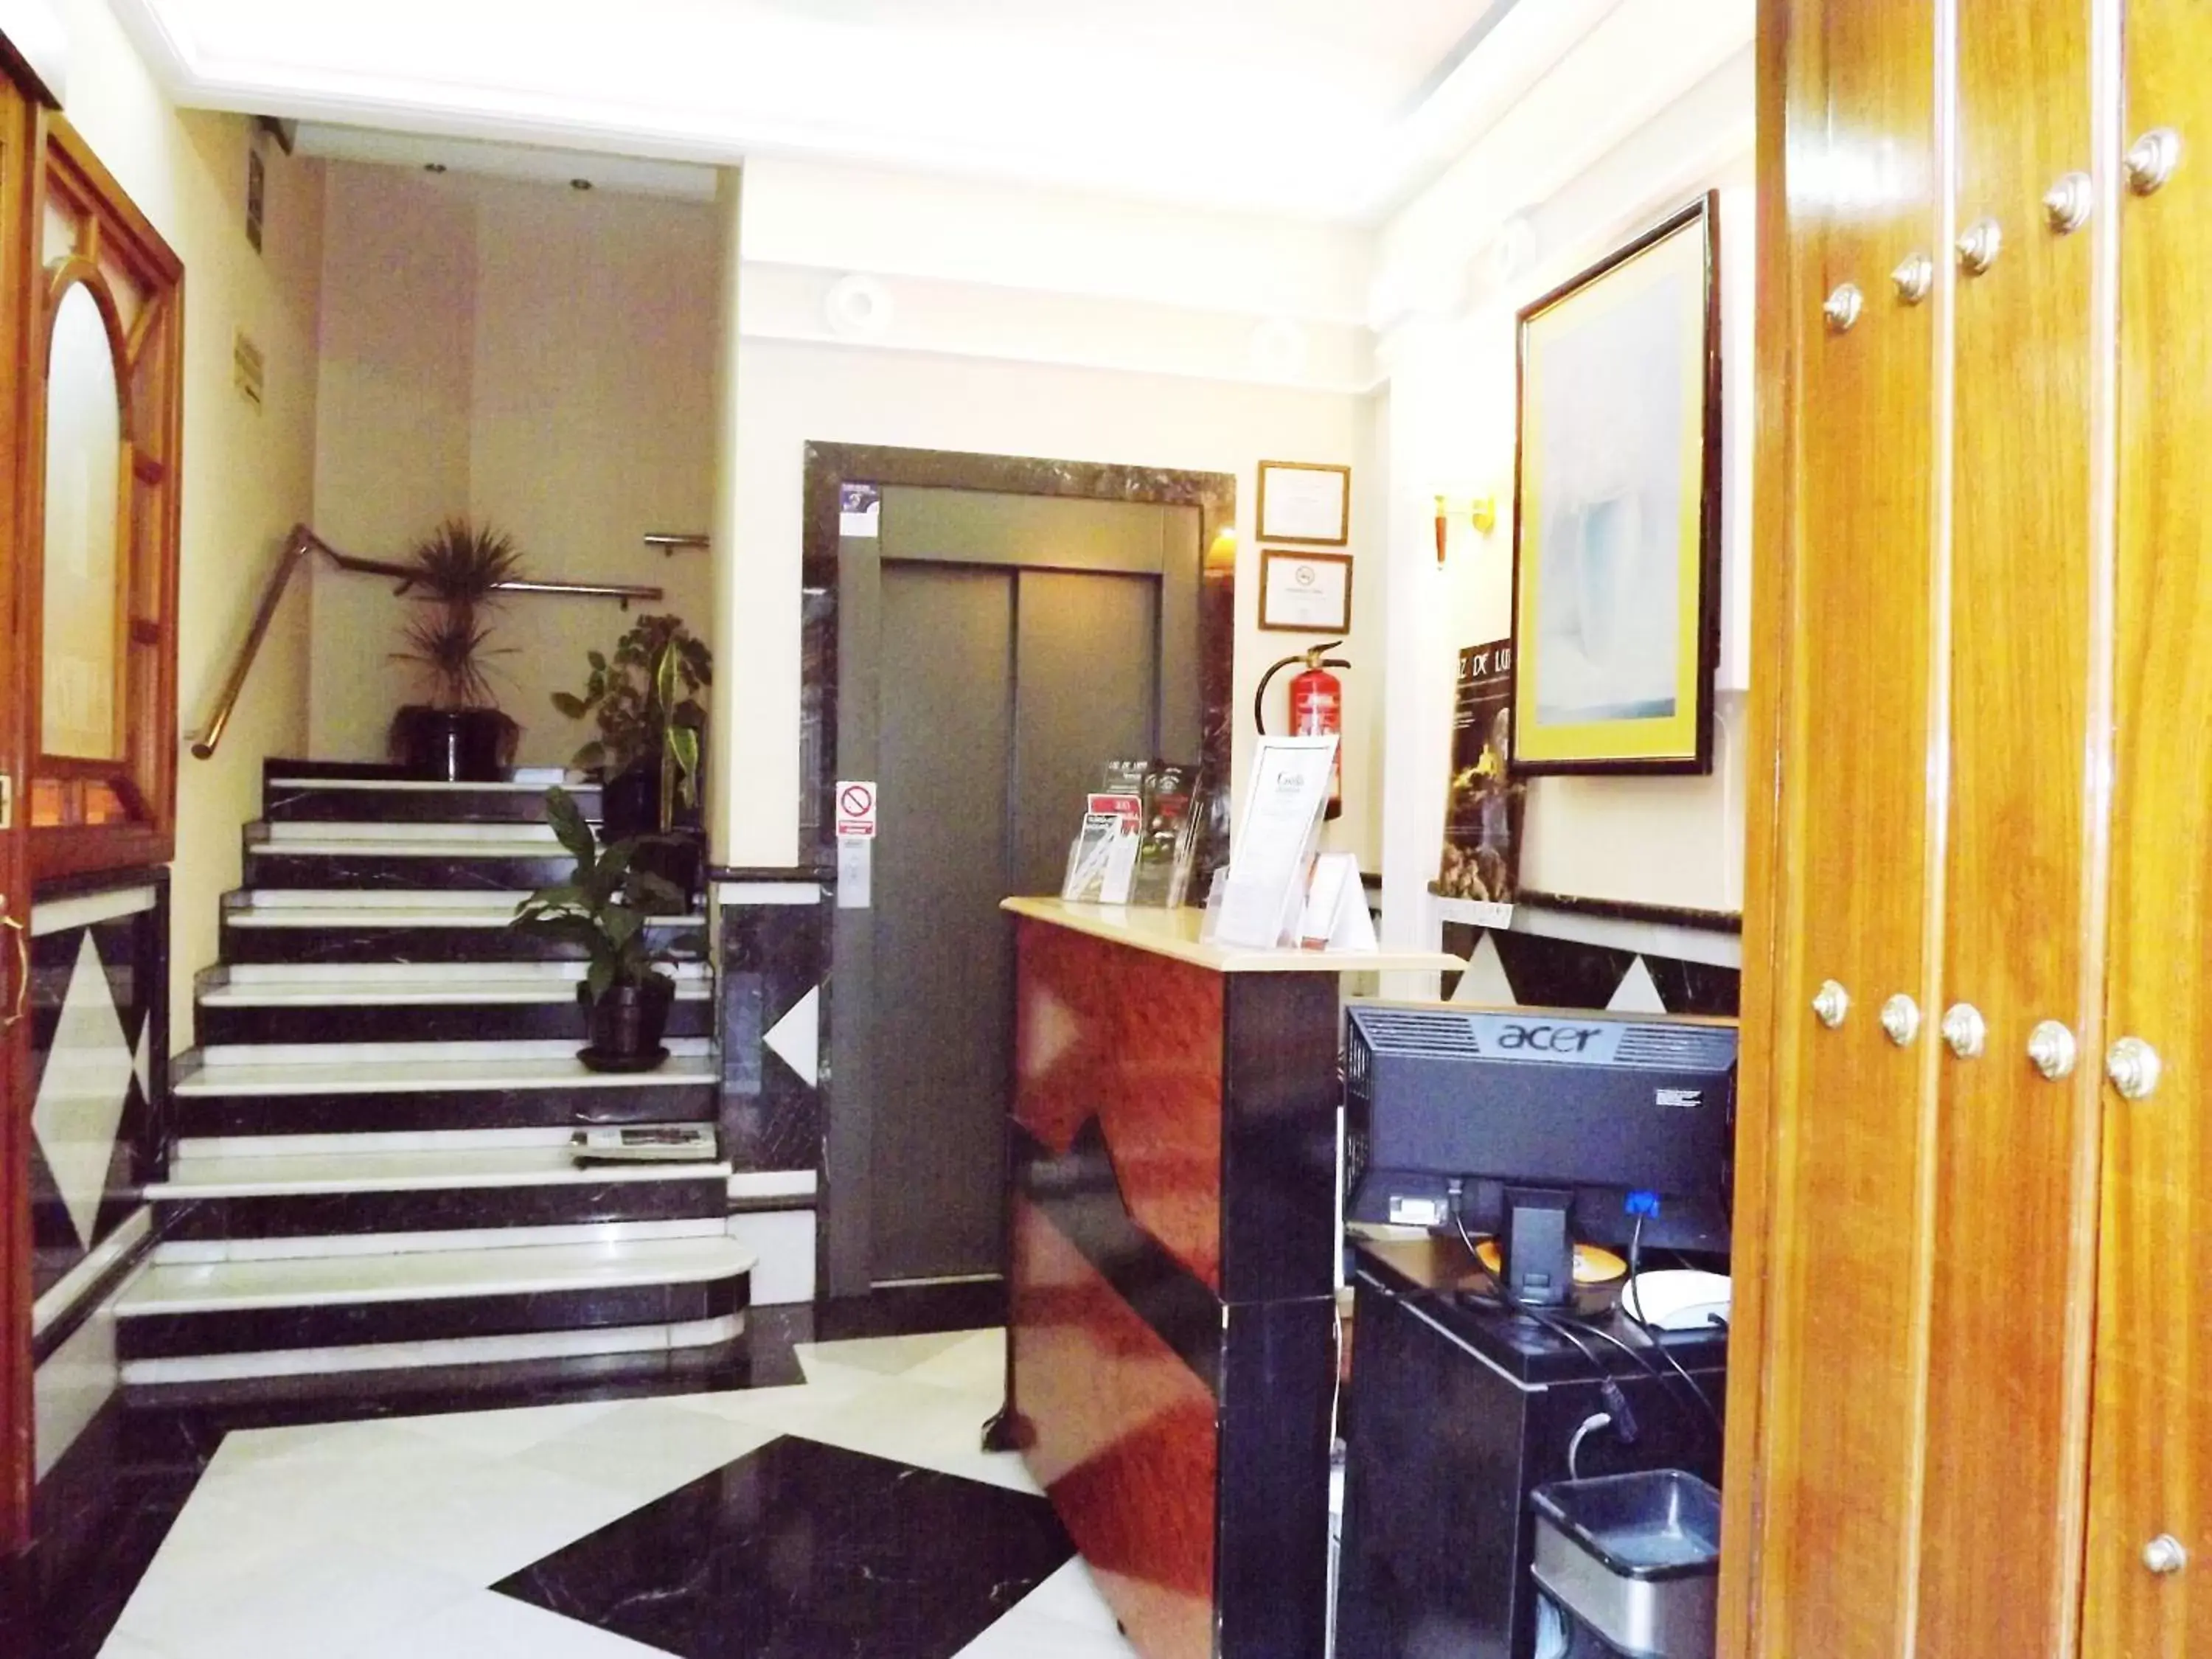 Lobby or reception in Hotel Castilla